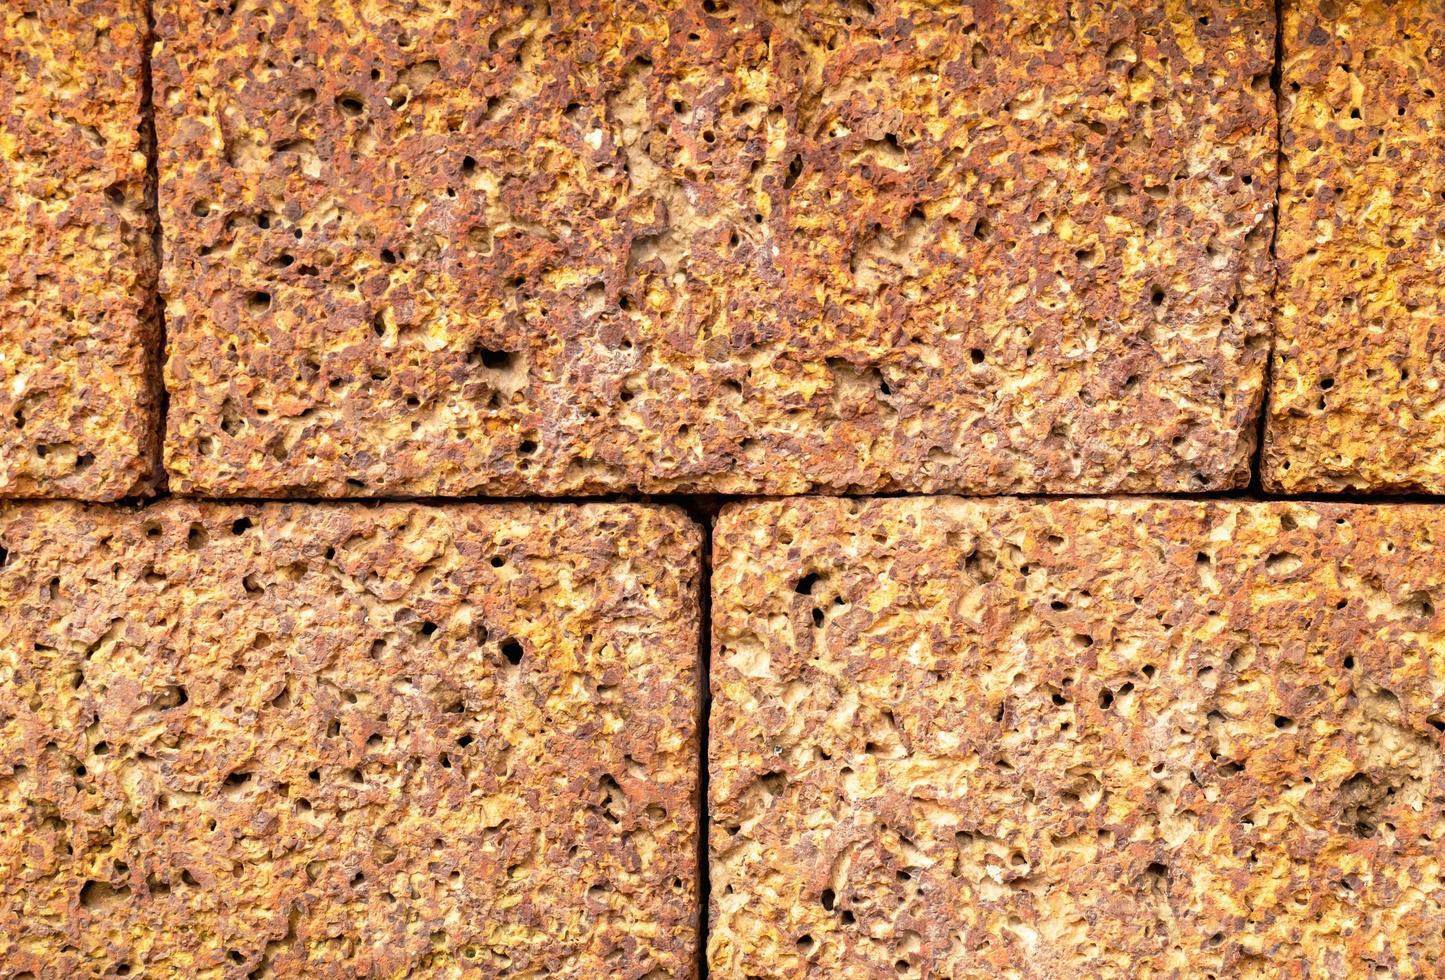 baksteen steen textuur er zijn veel gaten als gevolg van verslechtering als gevolg van weersomstandigheden en leeftijd. kan achtergrond zijn foto